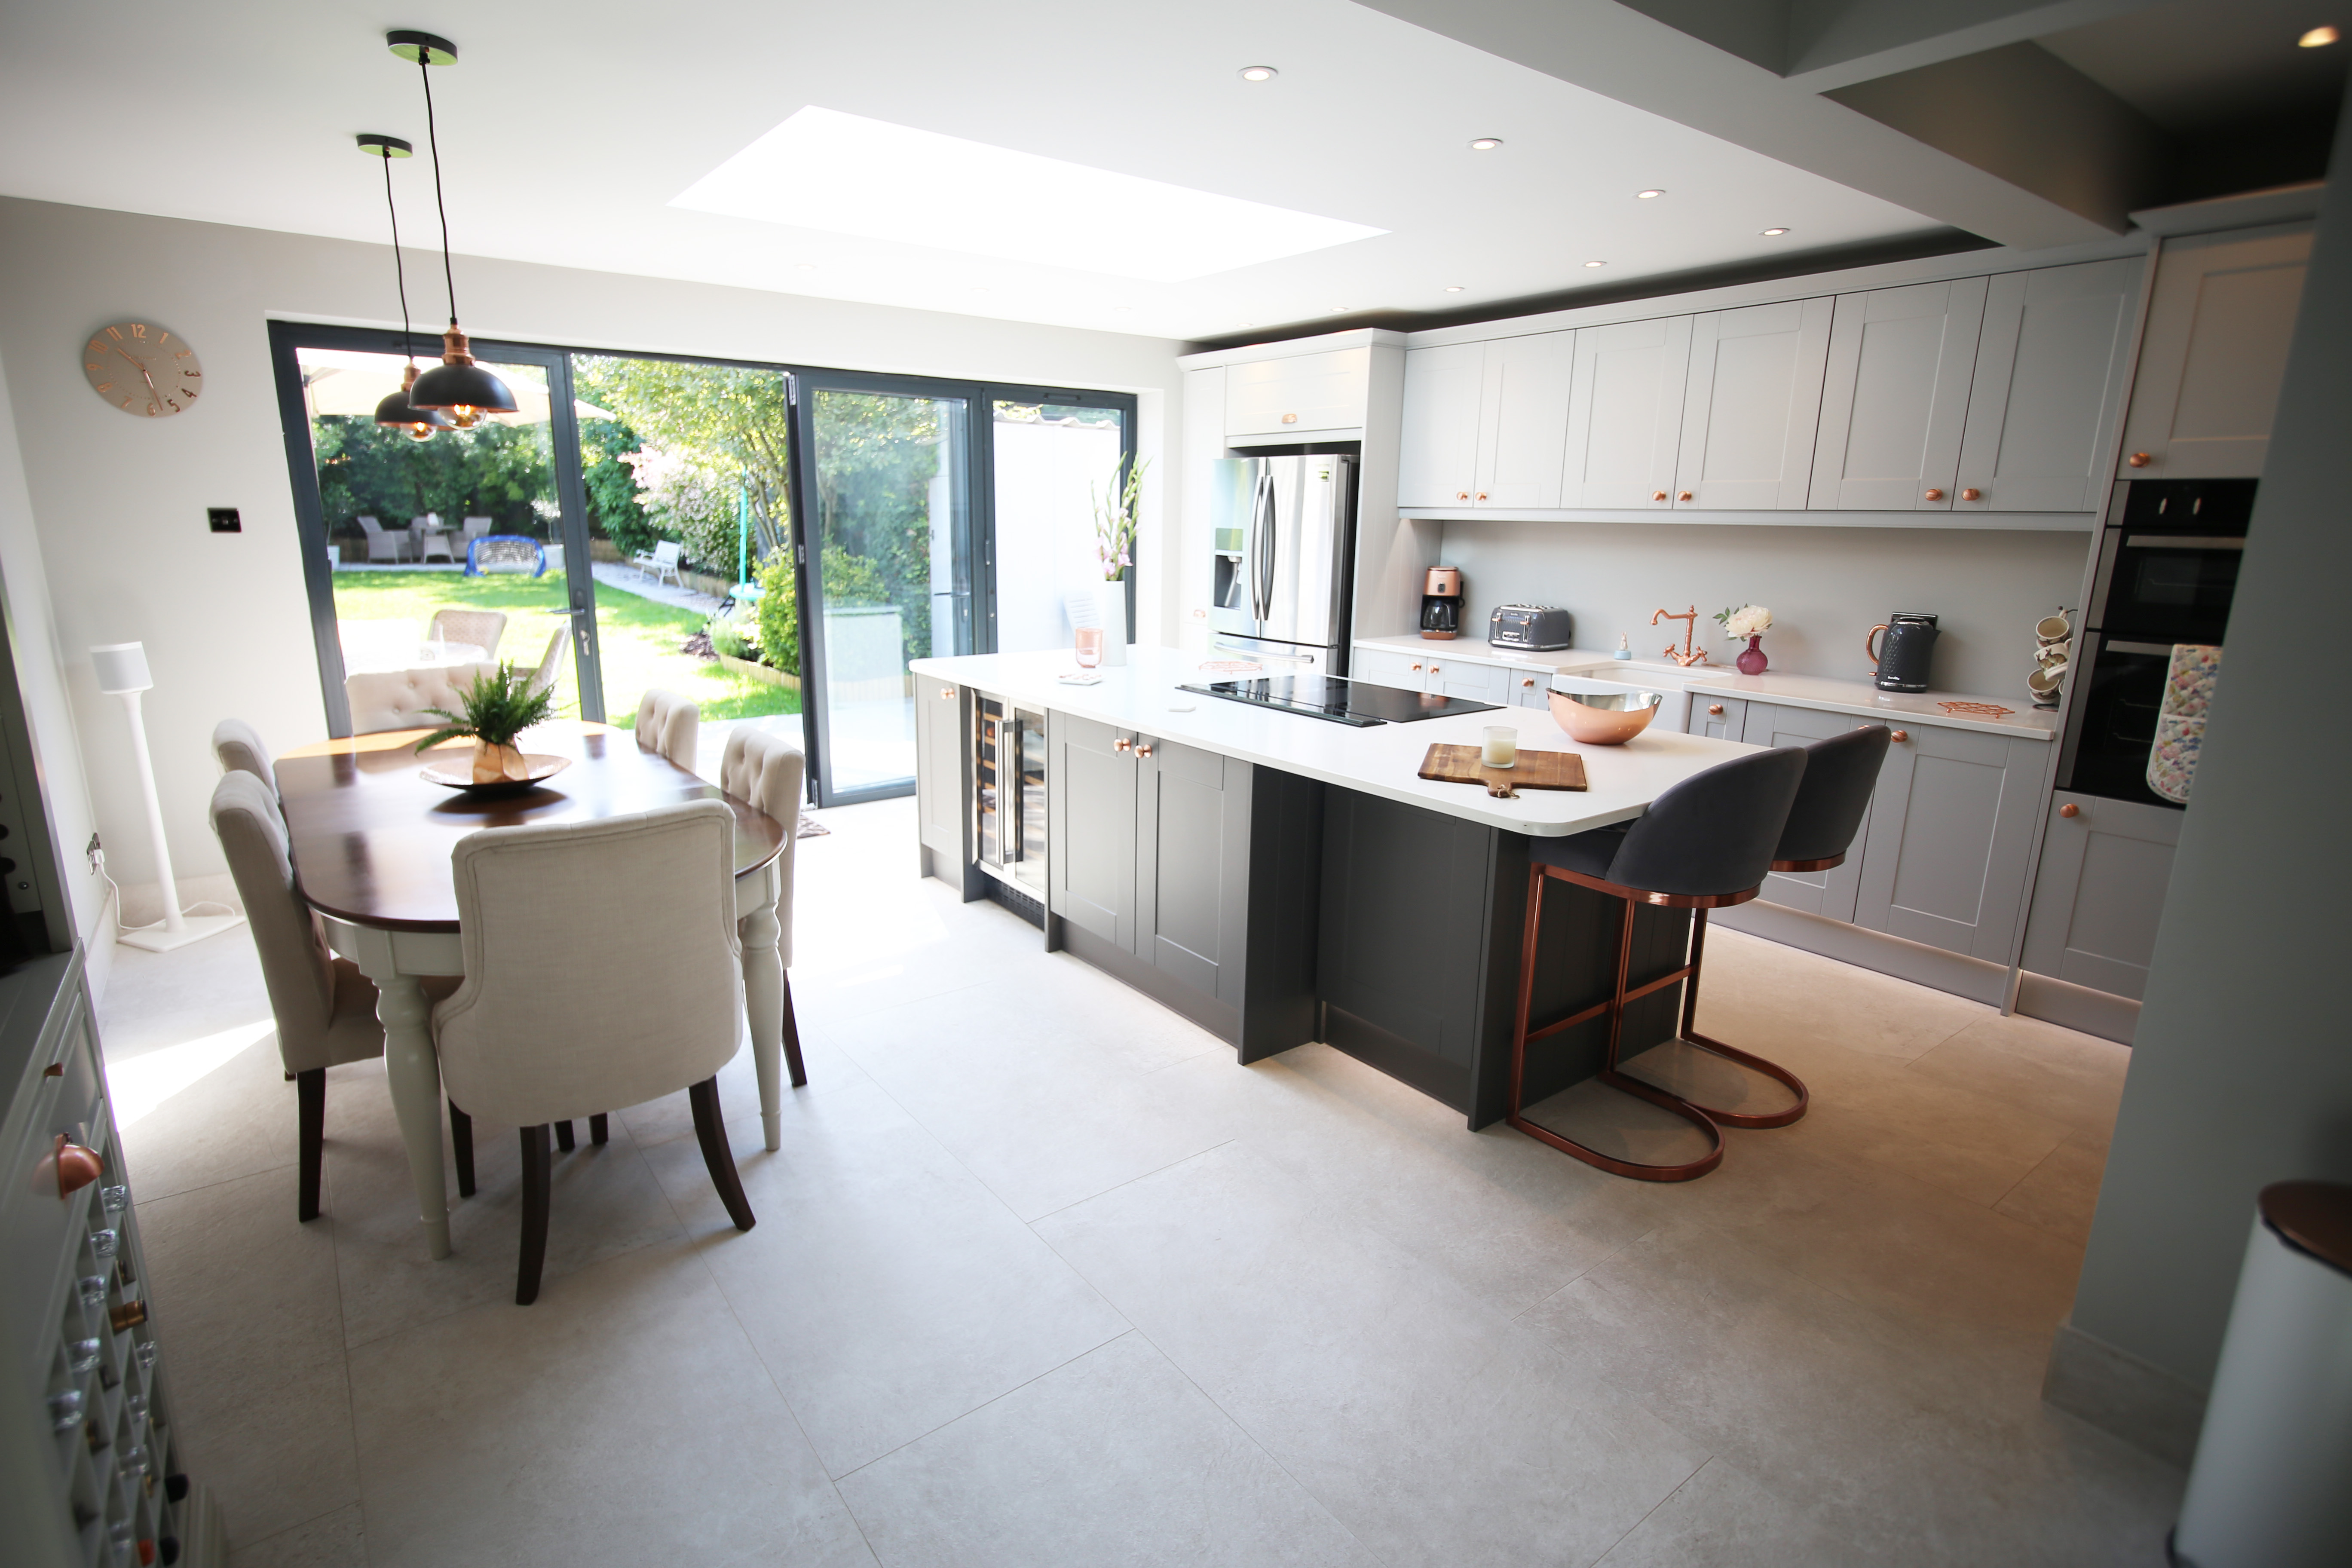 Kitchen Extension Planning Advice   Fluent Architectural Design ...